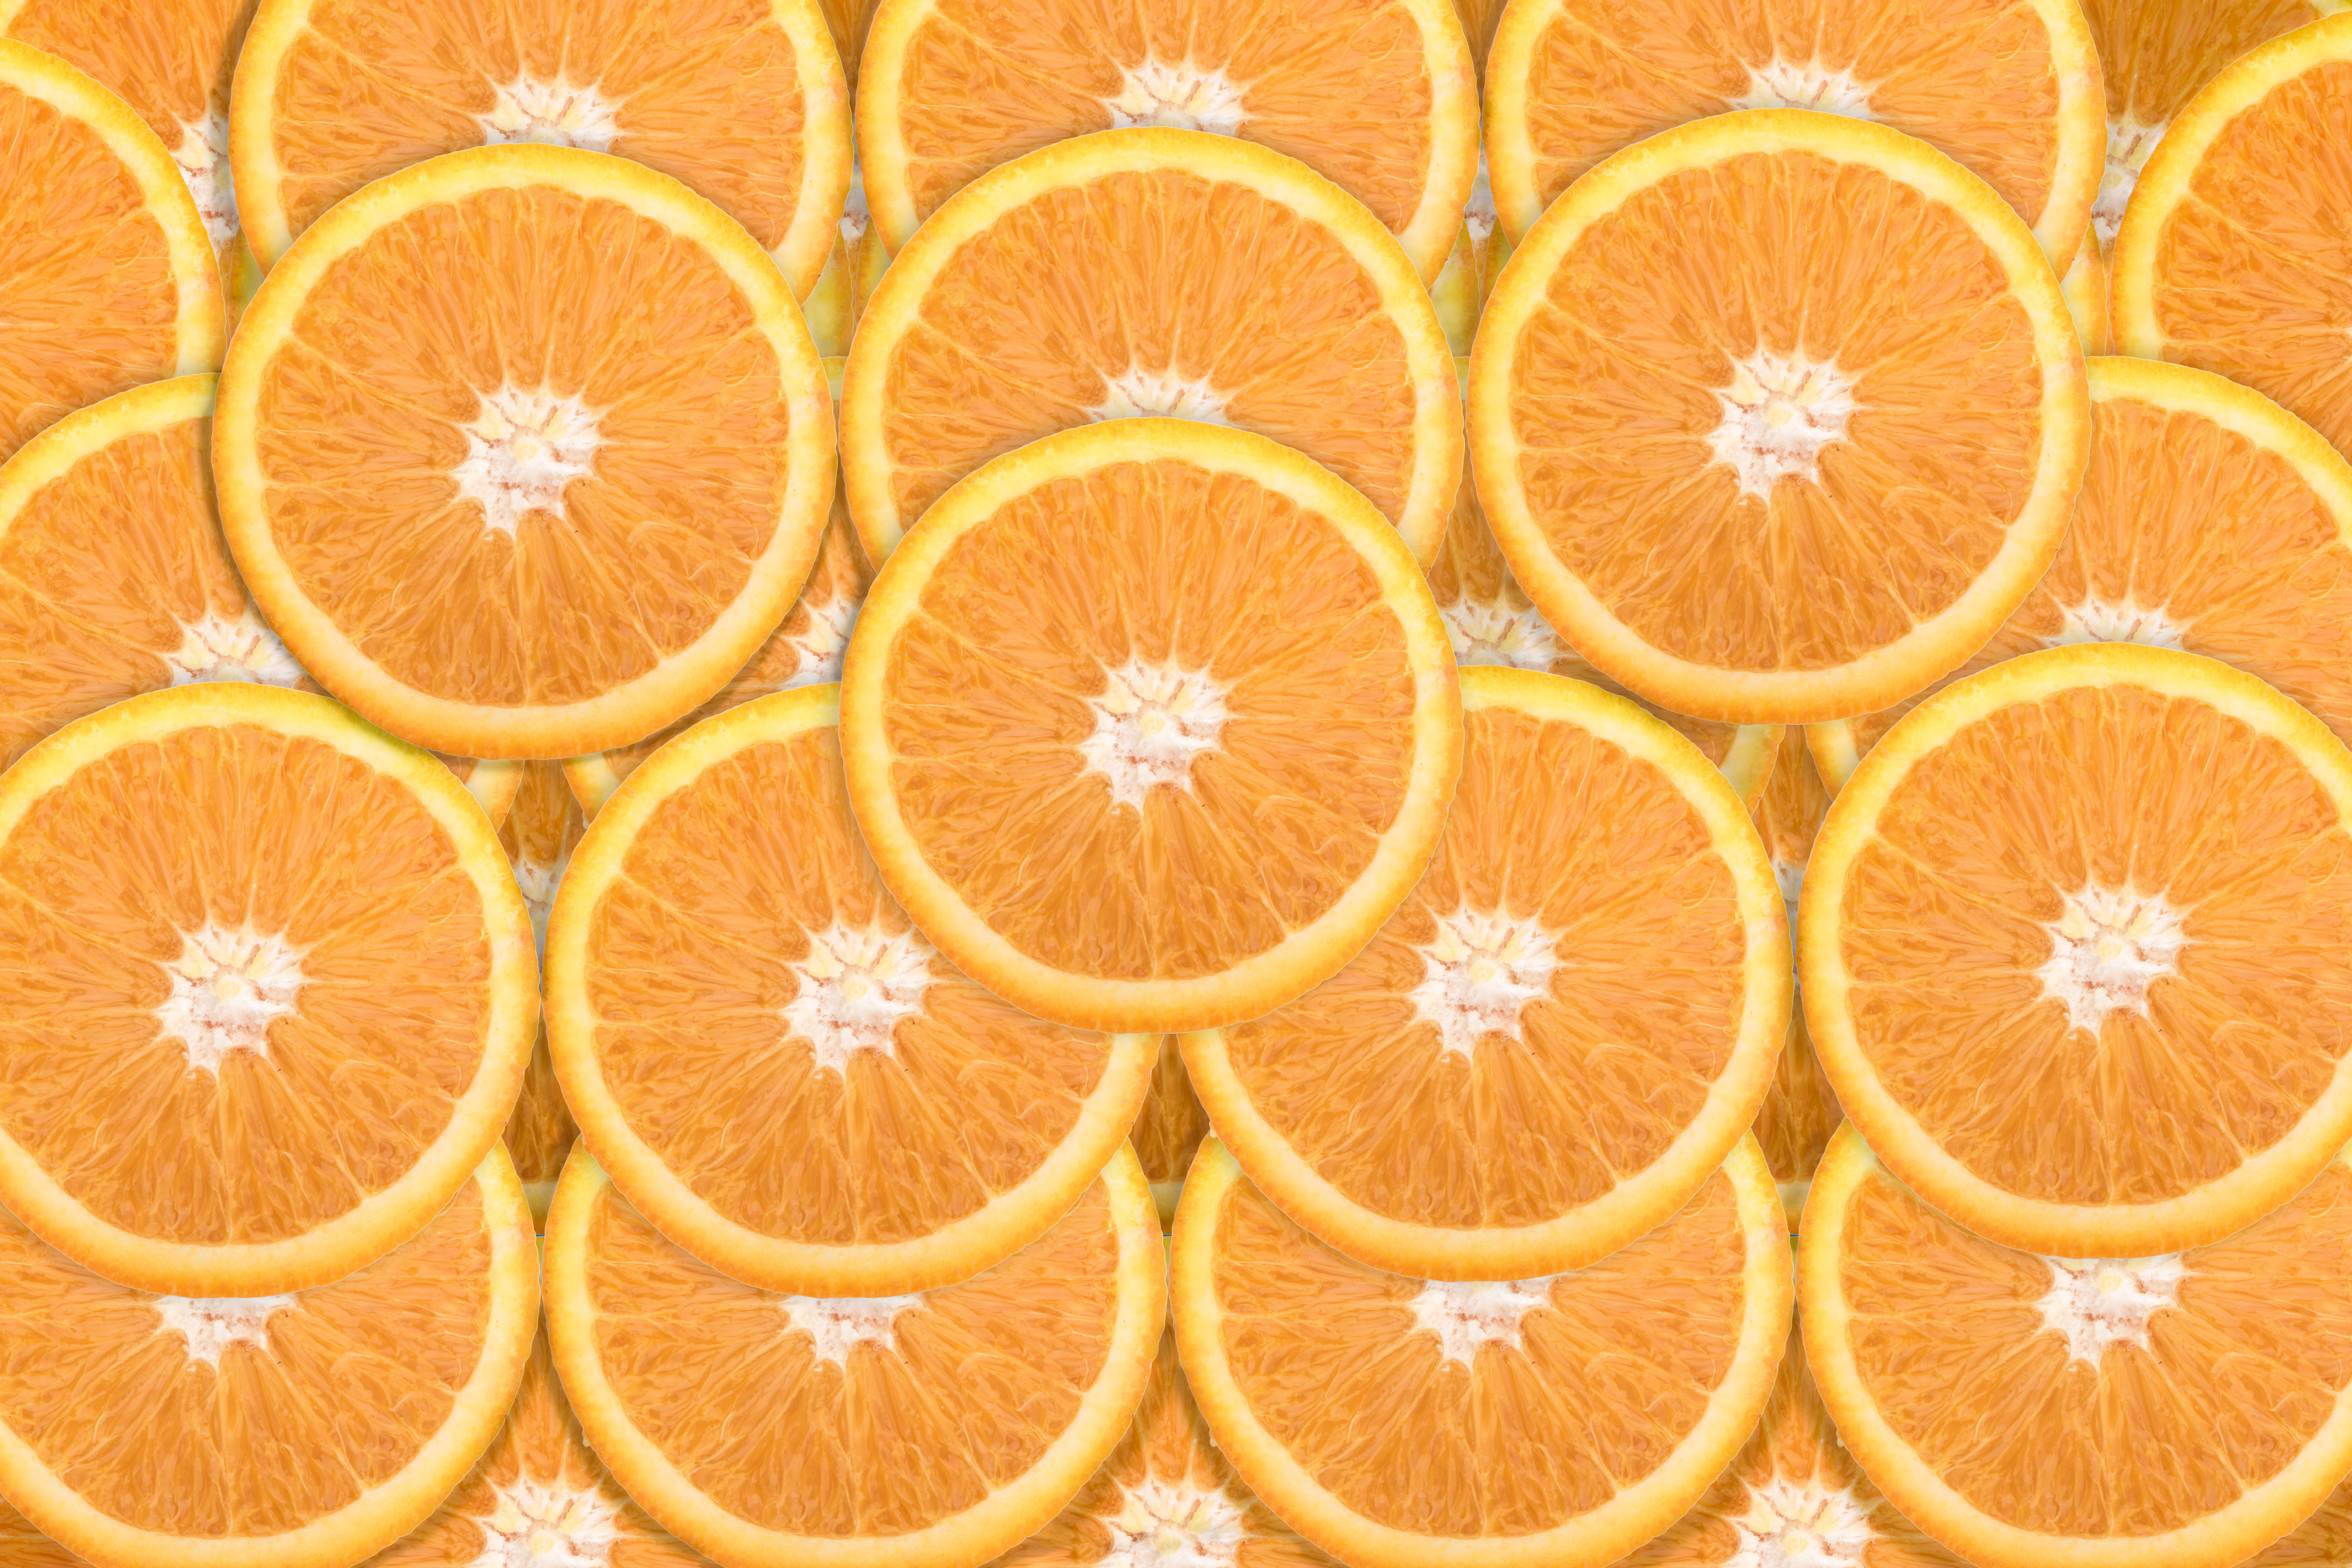 Обои на стену с апельсинами